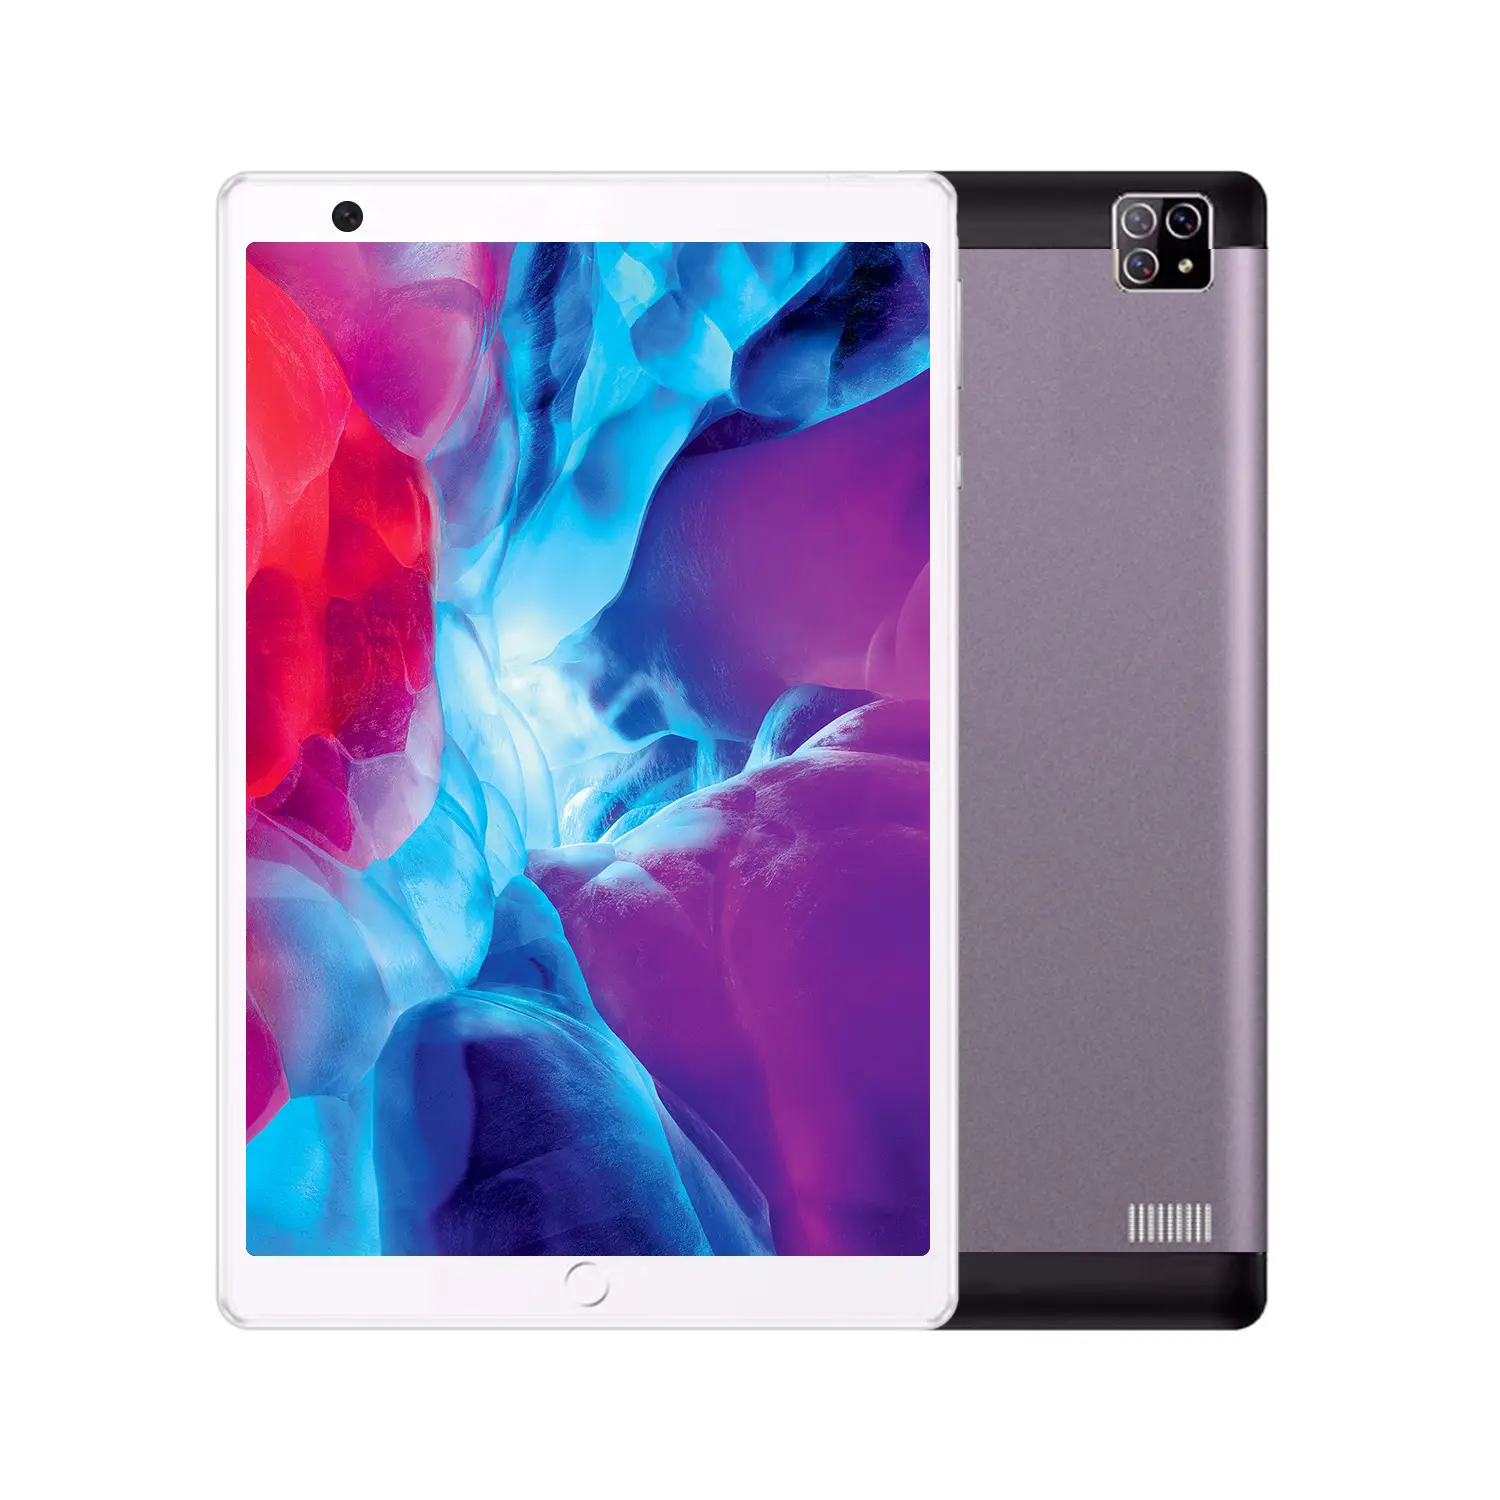 Yeni gelenler ucuz fiyat 8 inç IPS 3G Android akıllı Tablet 2.0GHZ dört çekirdekli MTK6592 oyun Tablet PC çift SIM kart